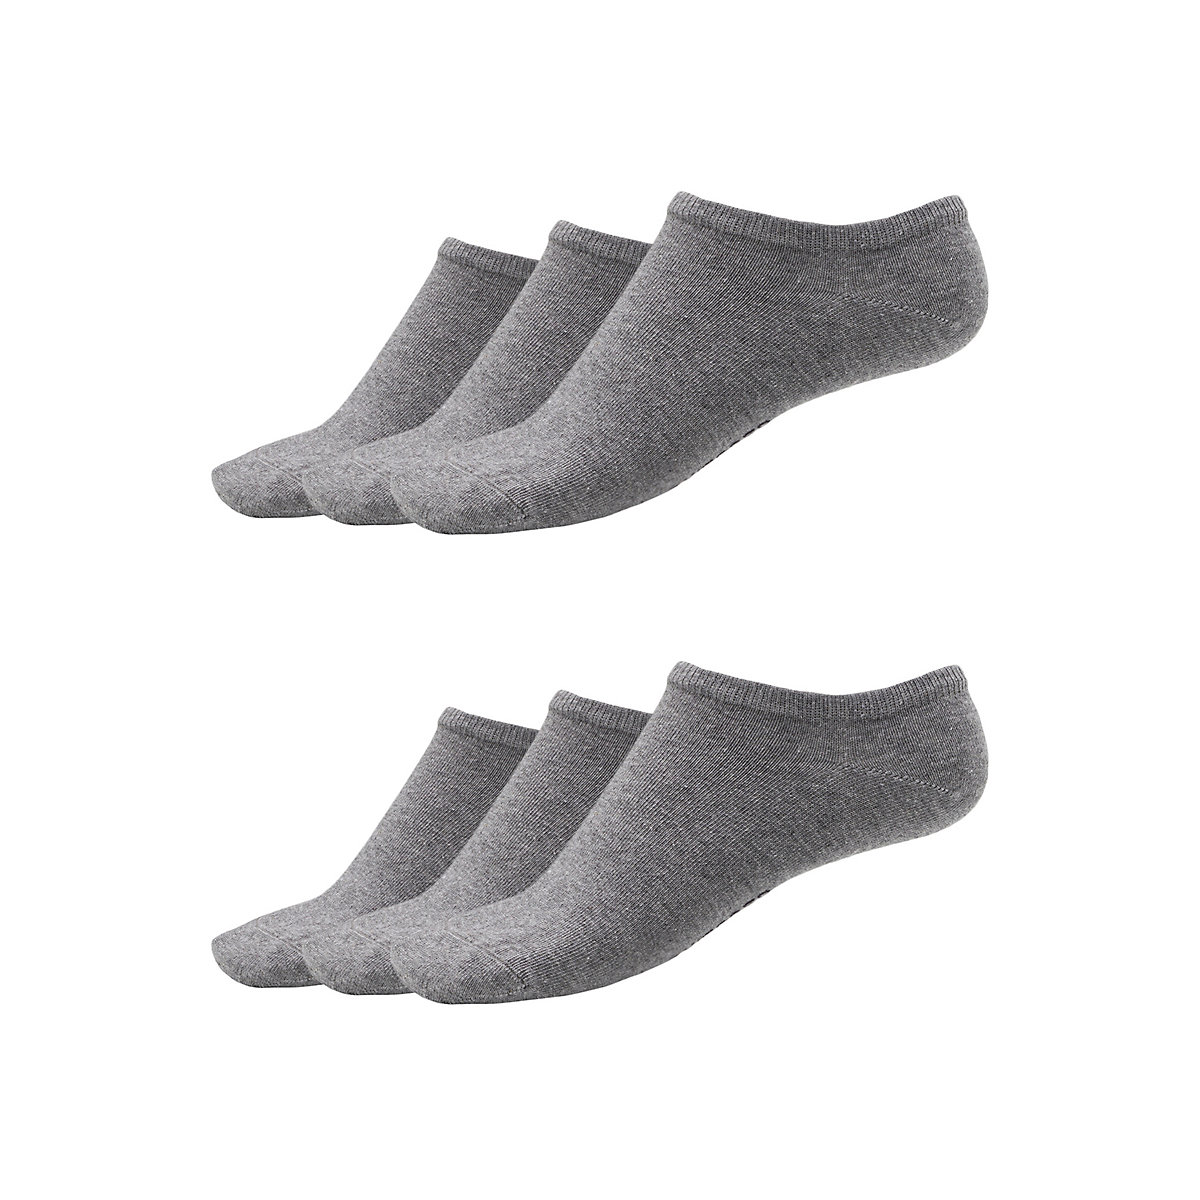 SCHIESSER Damensneakers 6er-Pack Socken Socken silber-kombi